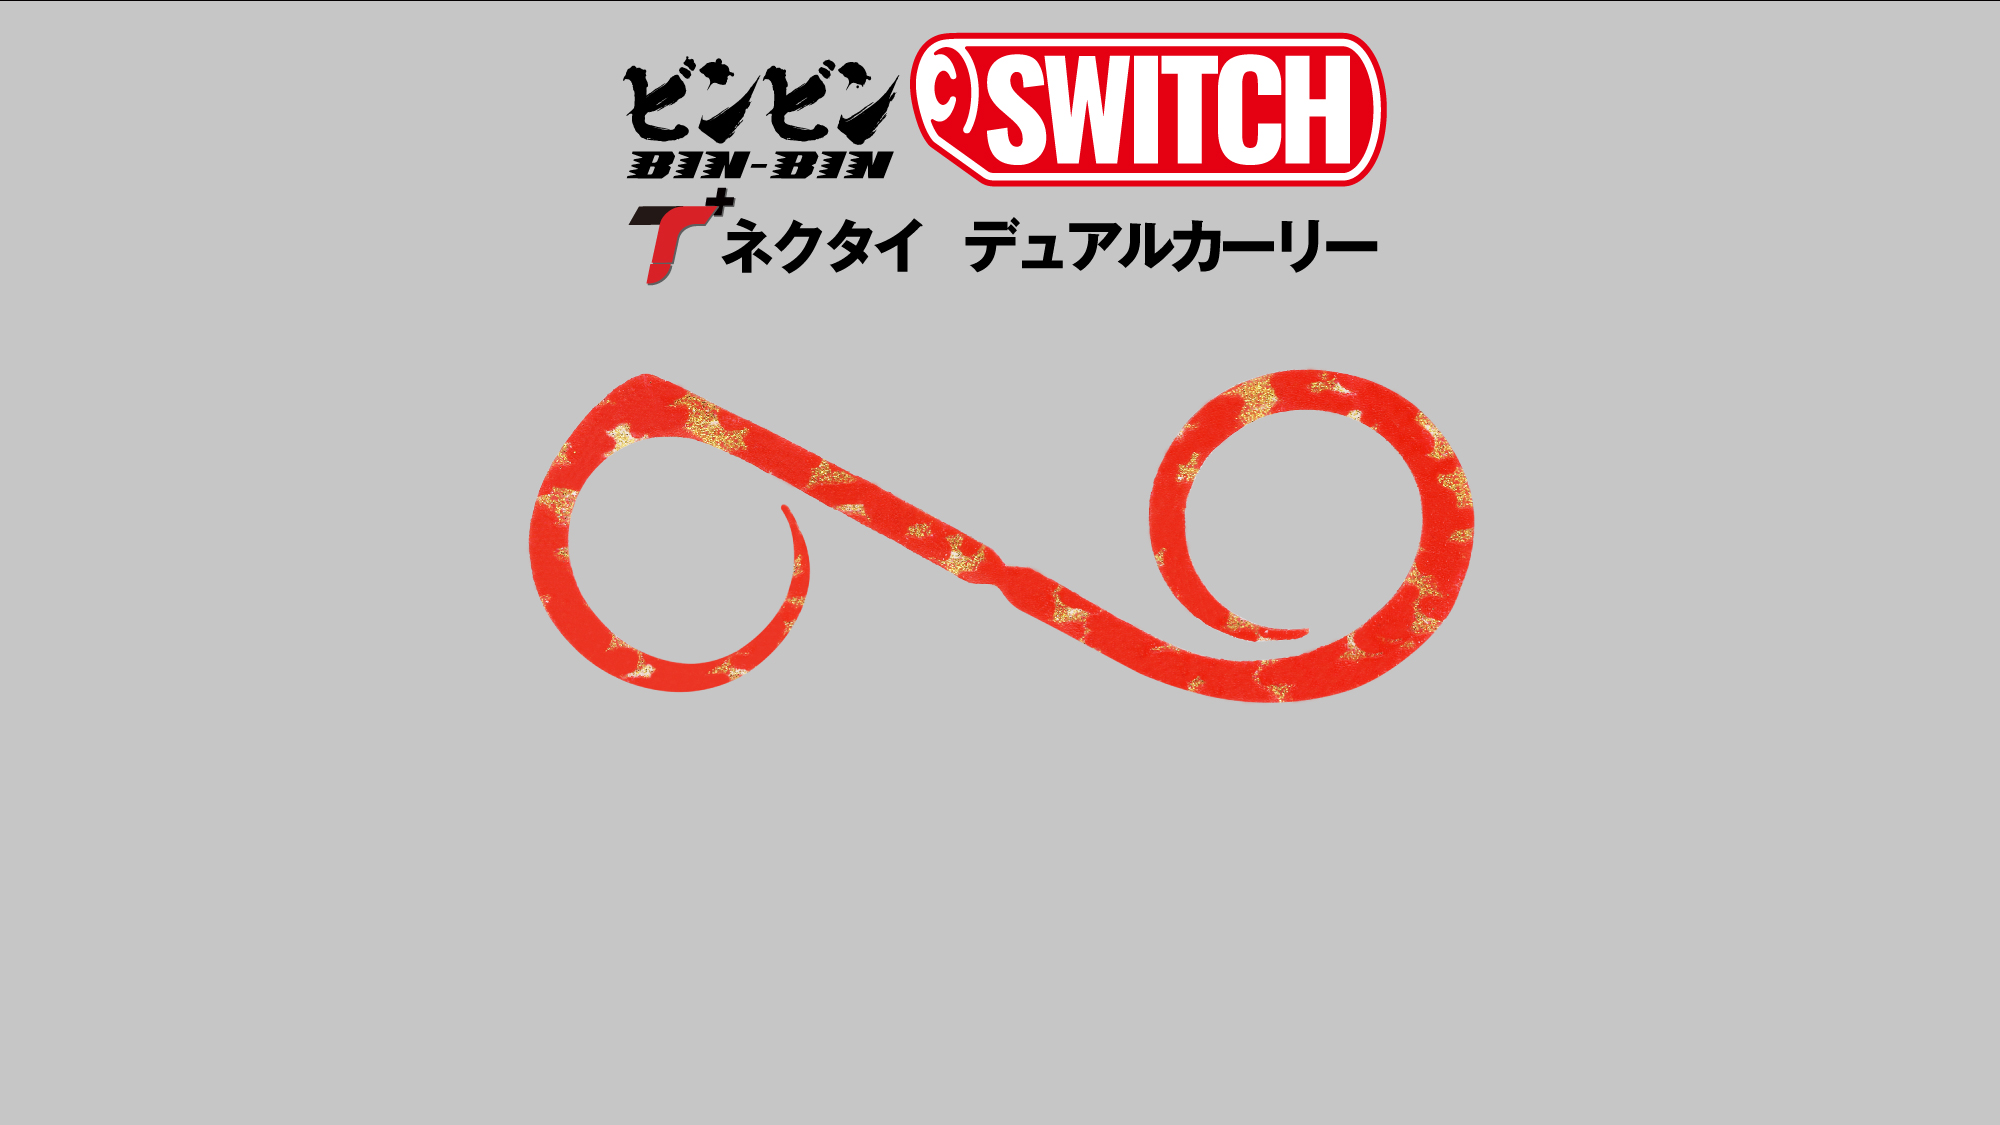 BINBIN SWITCH DUAL CURLY/ビンビンスイッチT+ネクタイ デュアル 